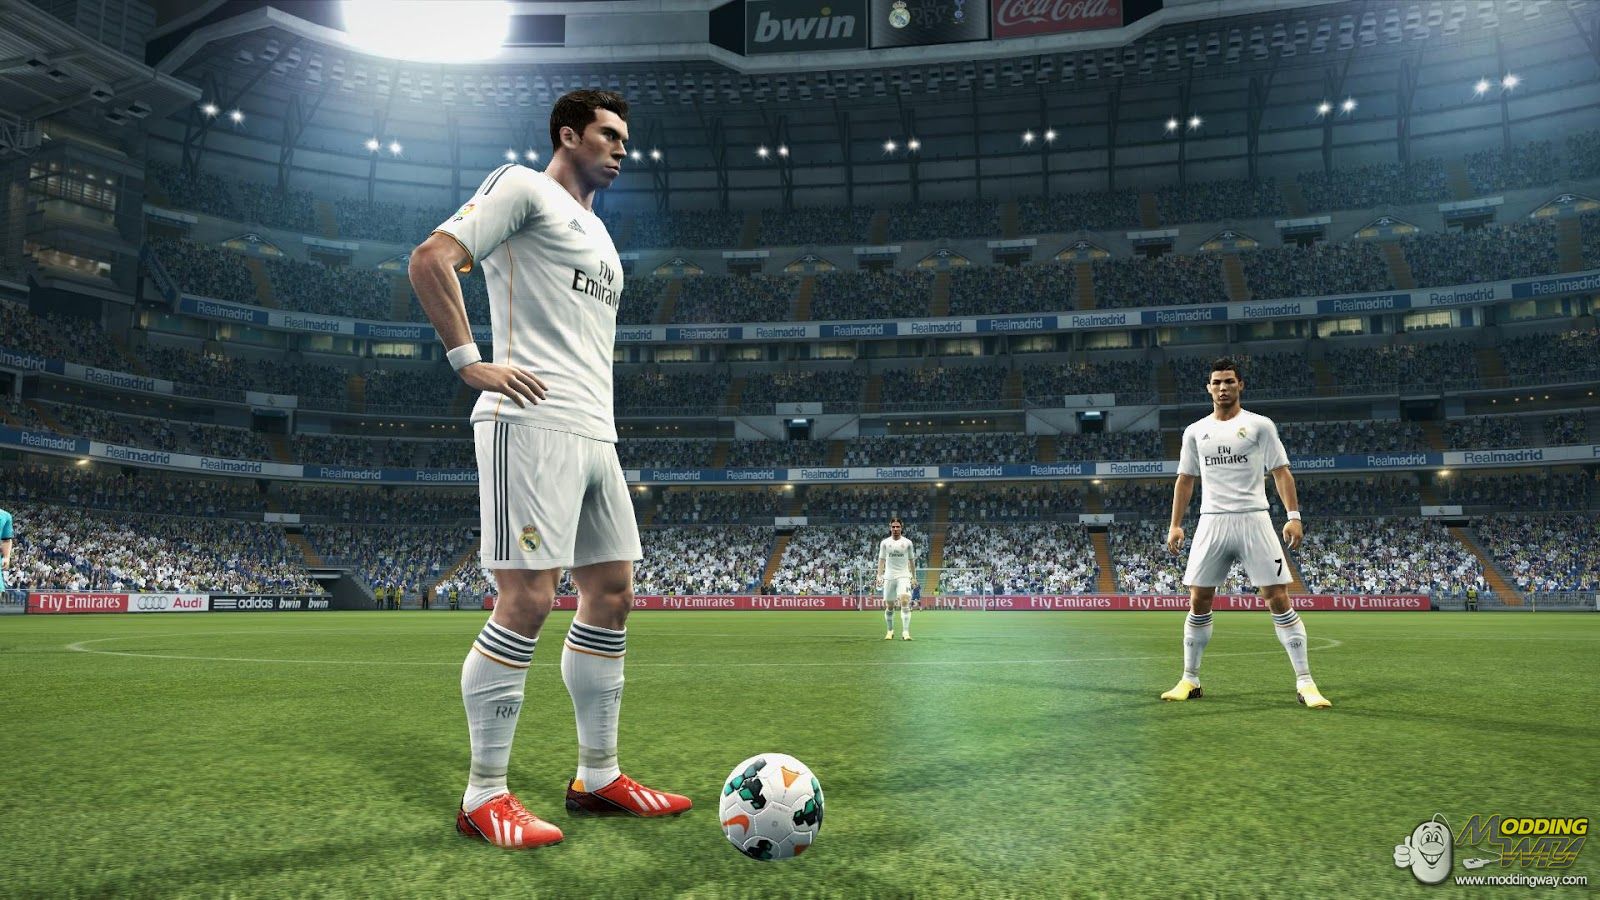 Download Pro Evolution Soccer 2013